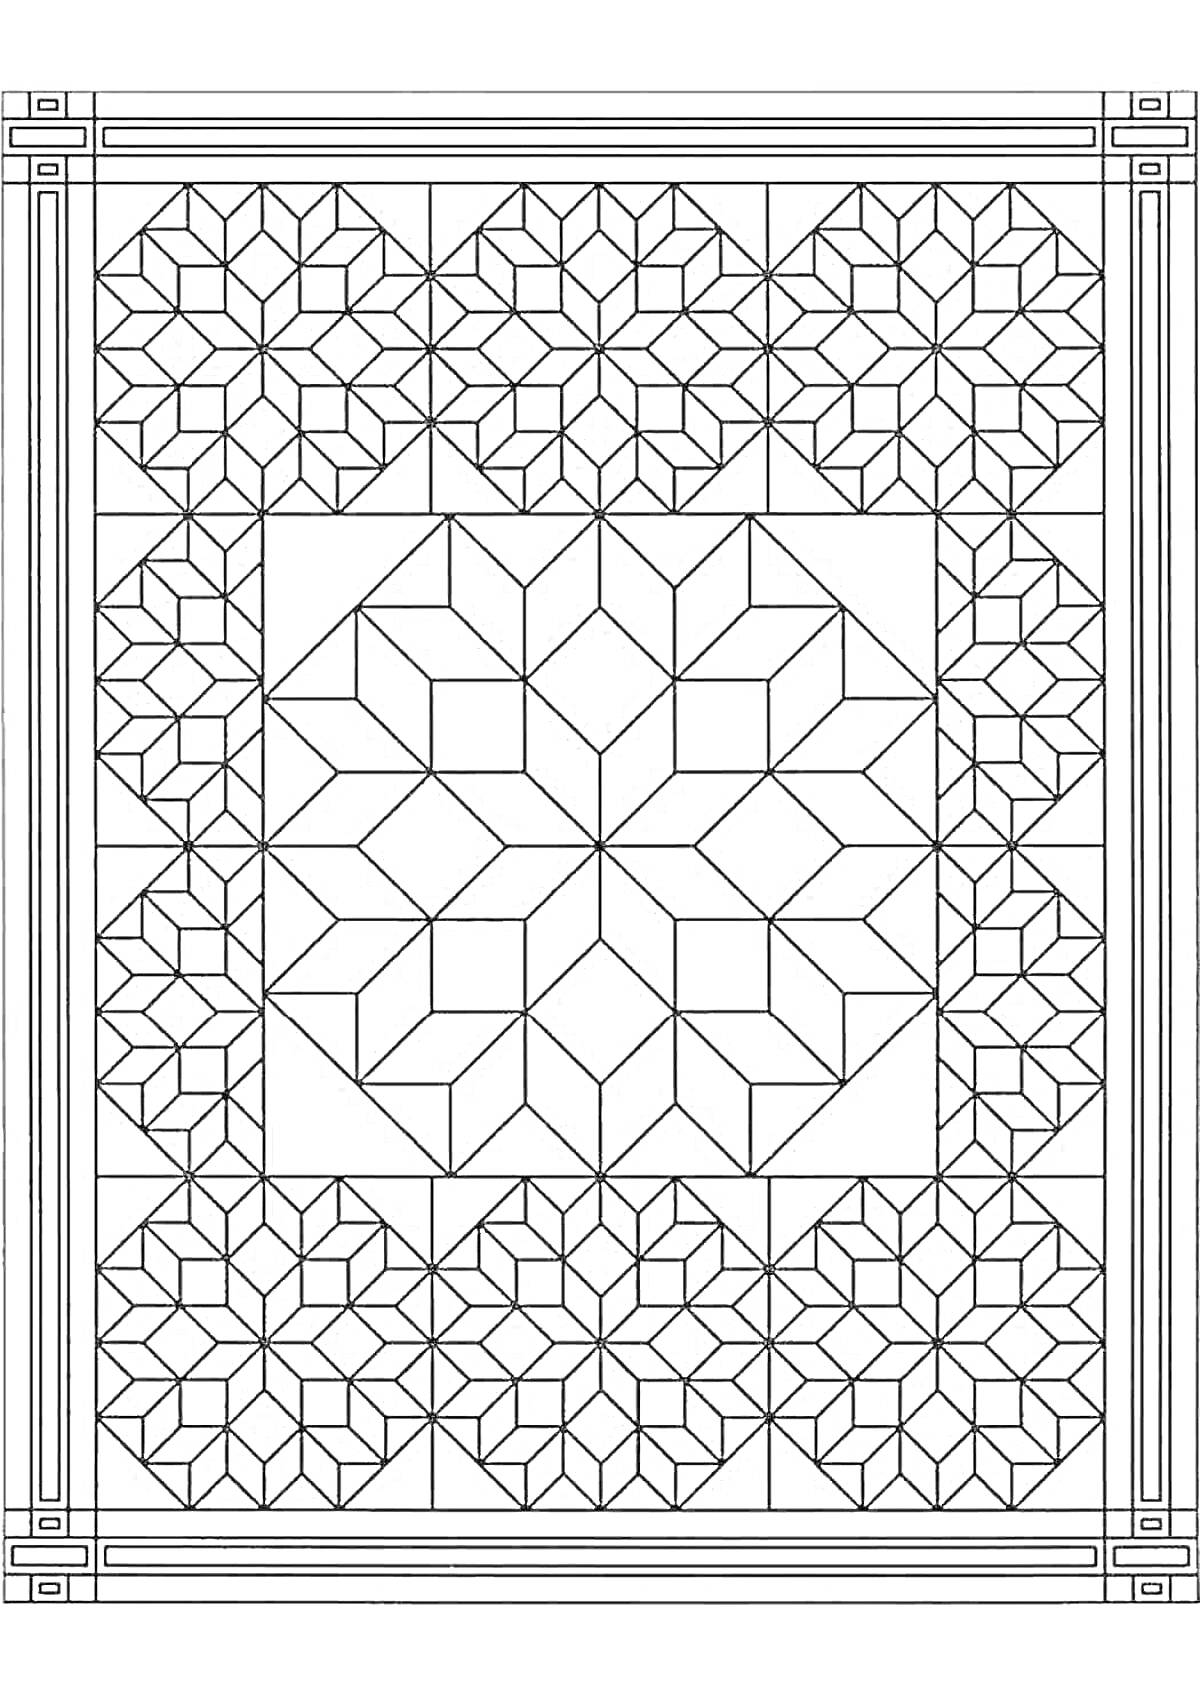 Раскраска Геометрическая раскраска с узорами квадратов и звезд в рамке